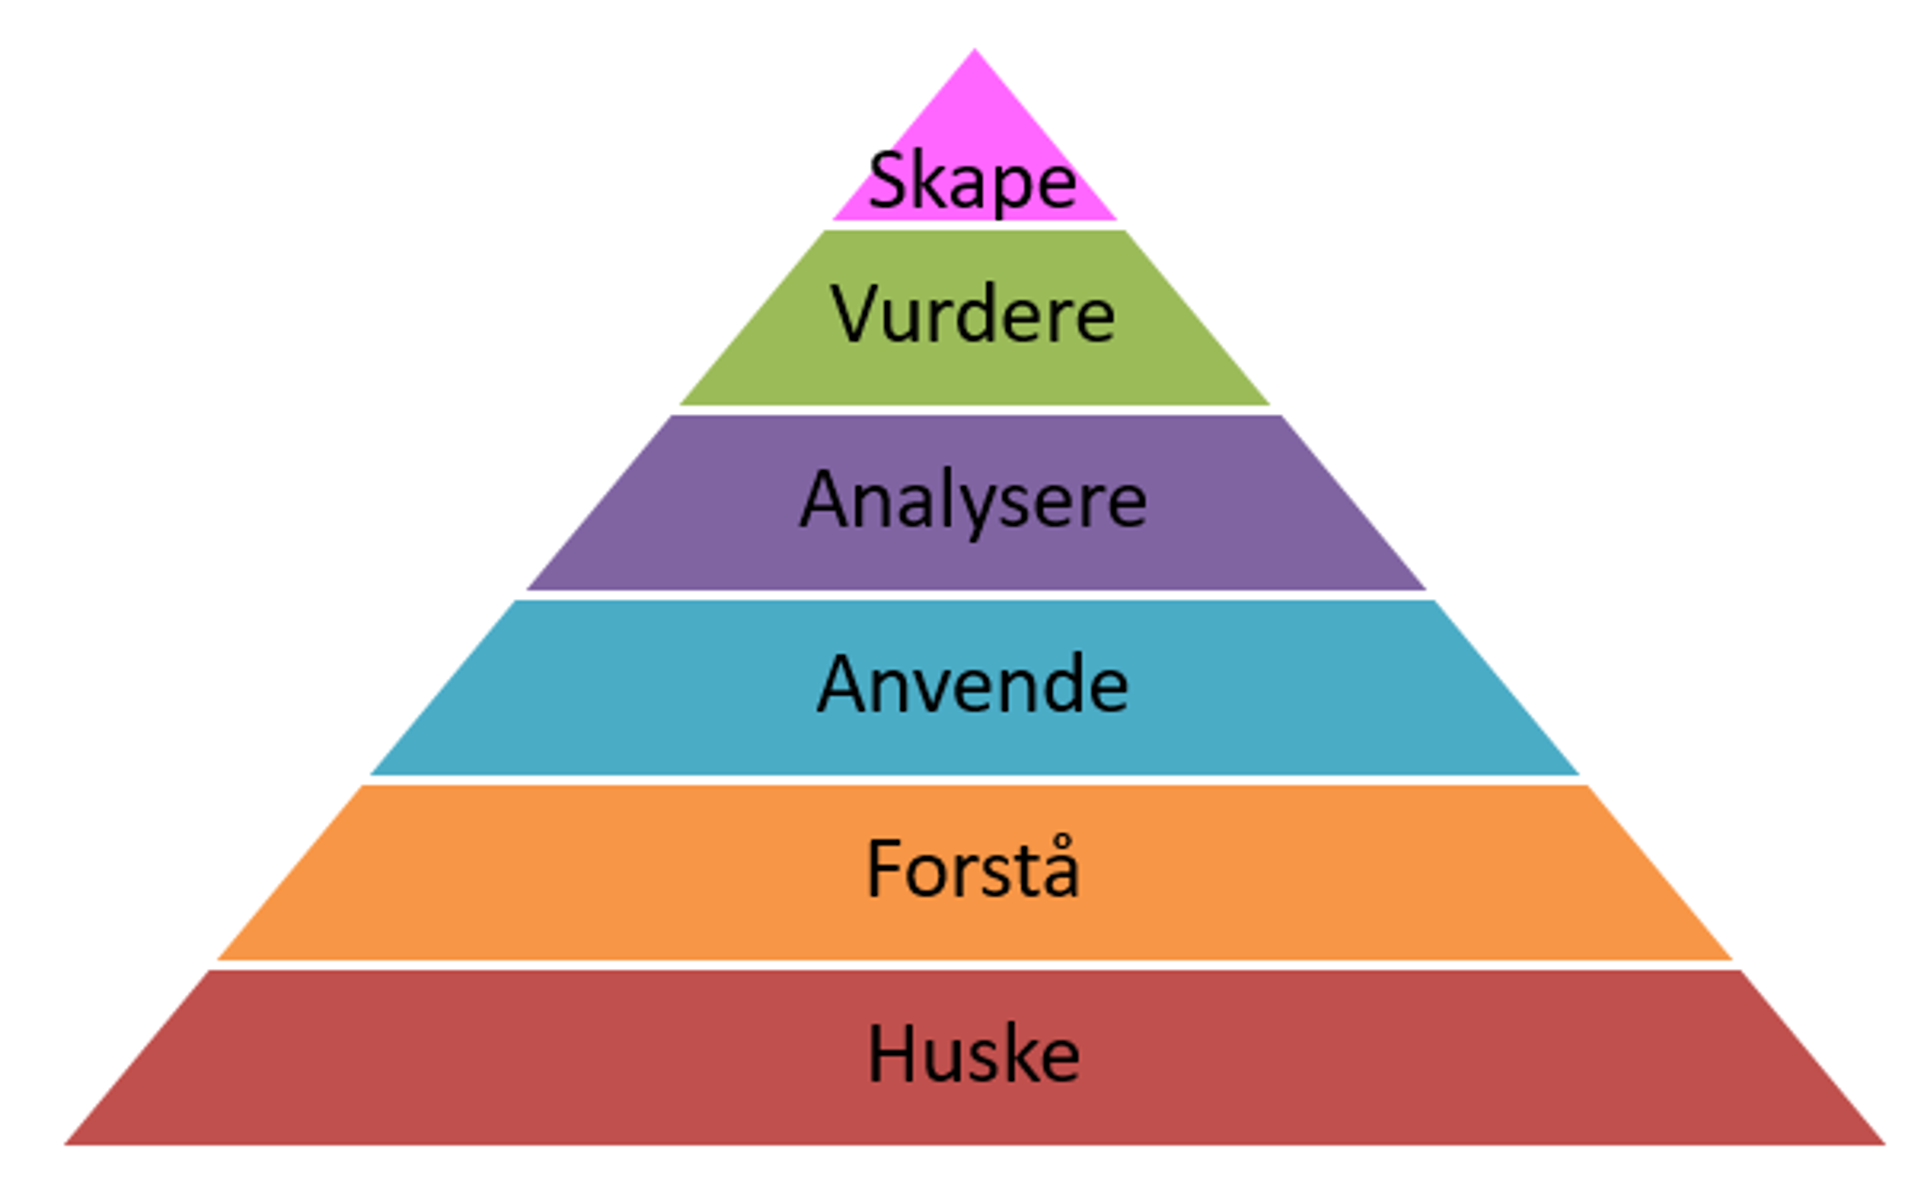 Hierarkisk oppbygging av kunnskapsutvikling. Pyramide som bygger på følgende nivåer, fra nederst til øverst: Huske, Forstå, Anvende, Analysere, Vurdere, Skape.